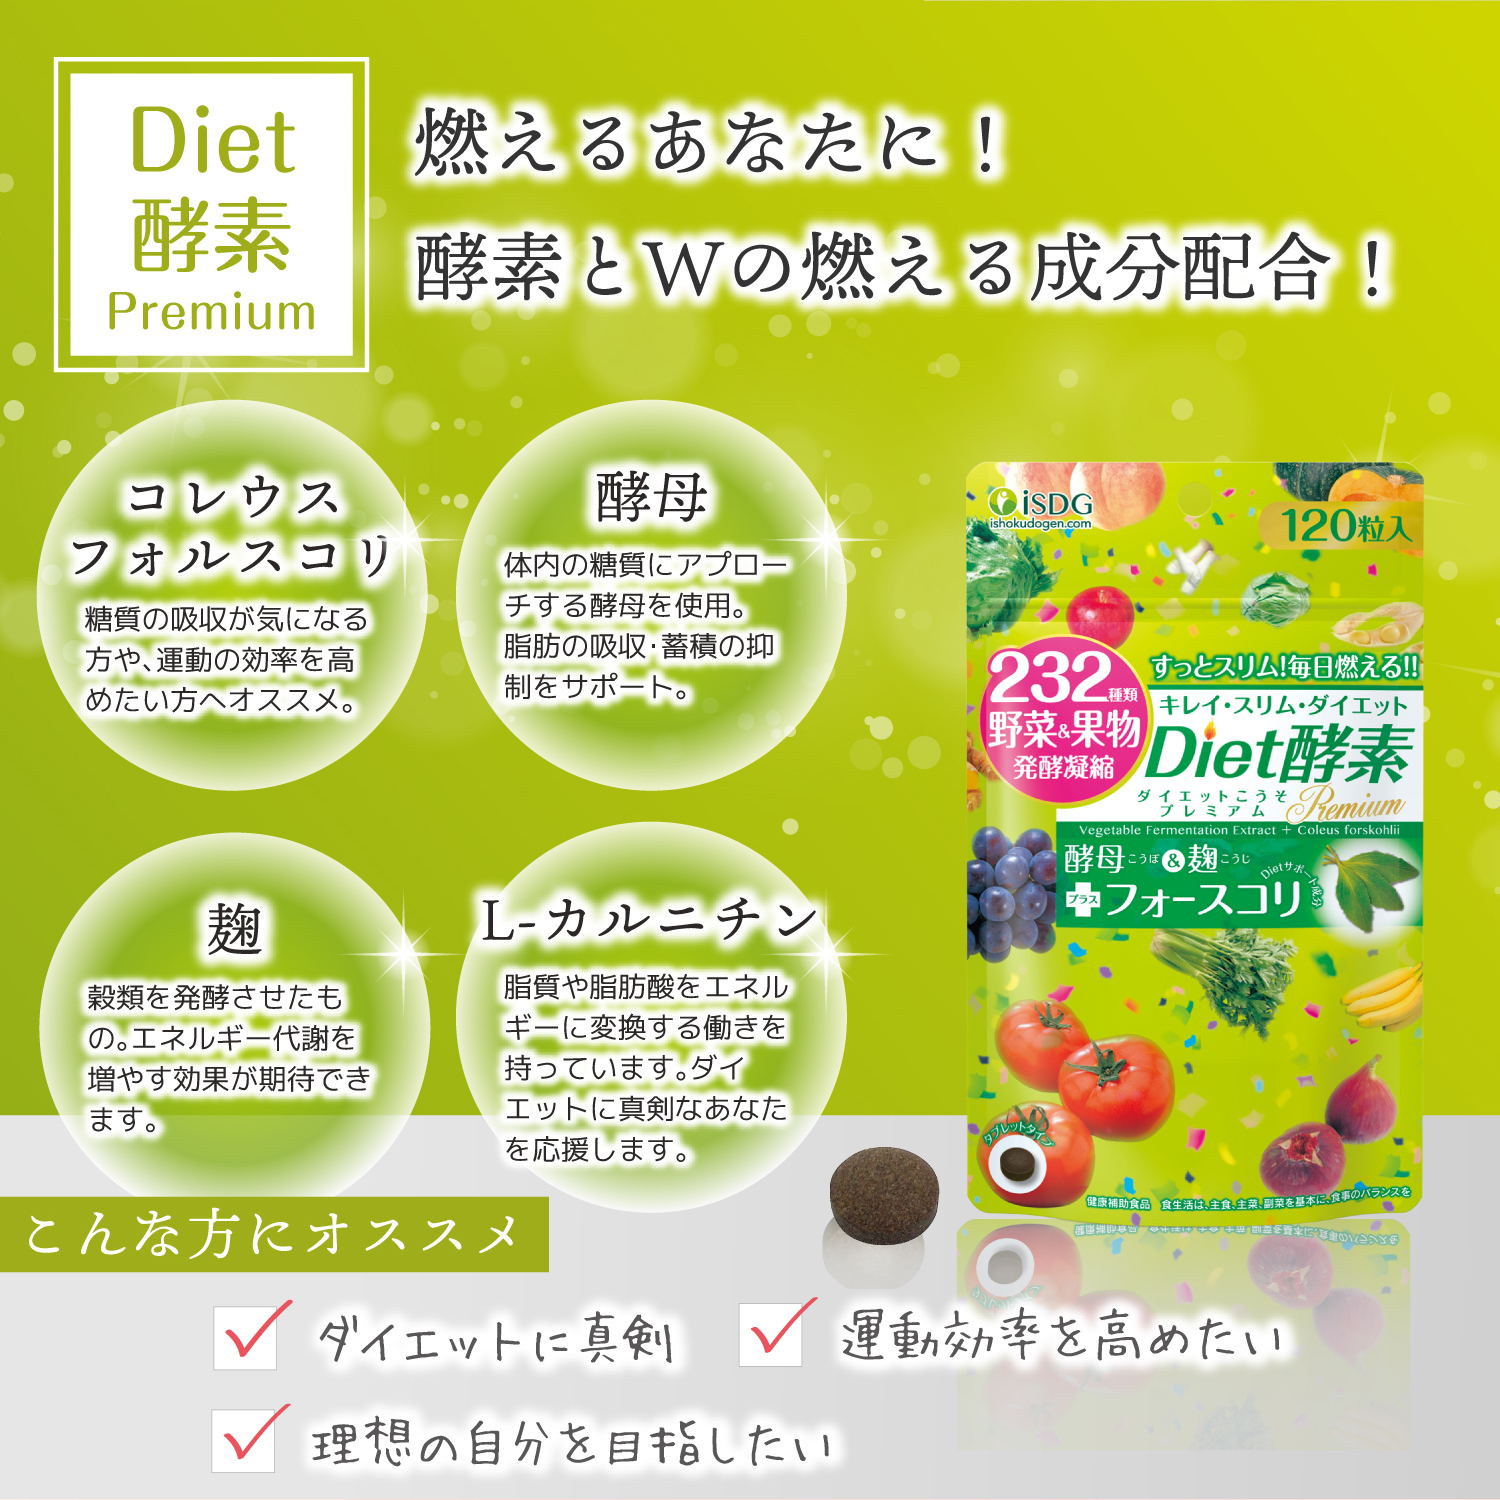 ISDG Diet Enzyme 120 viên của Nhật. Hỗ trợ đốt cháy các thành phần tạo nên mỡ thừa, bổ sụng các dưỡng chất rau củ quả cho chế độ ăn kiêng của bạn thêm sung túc